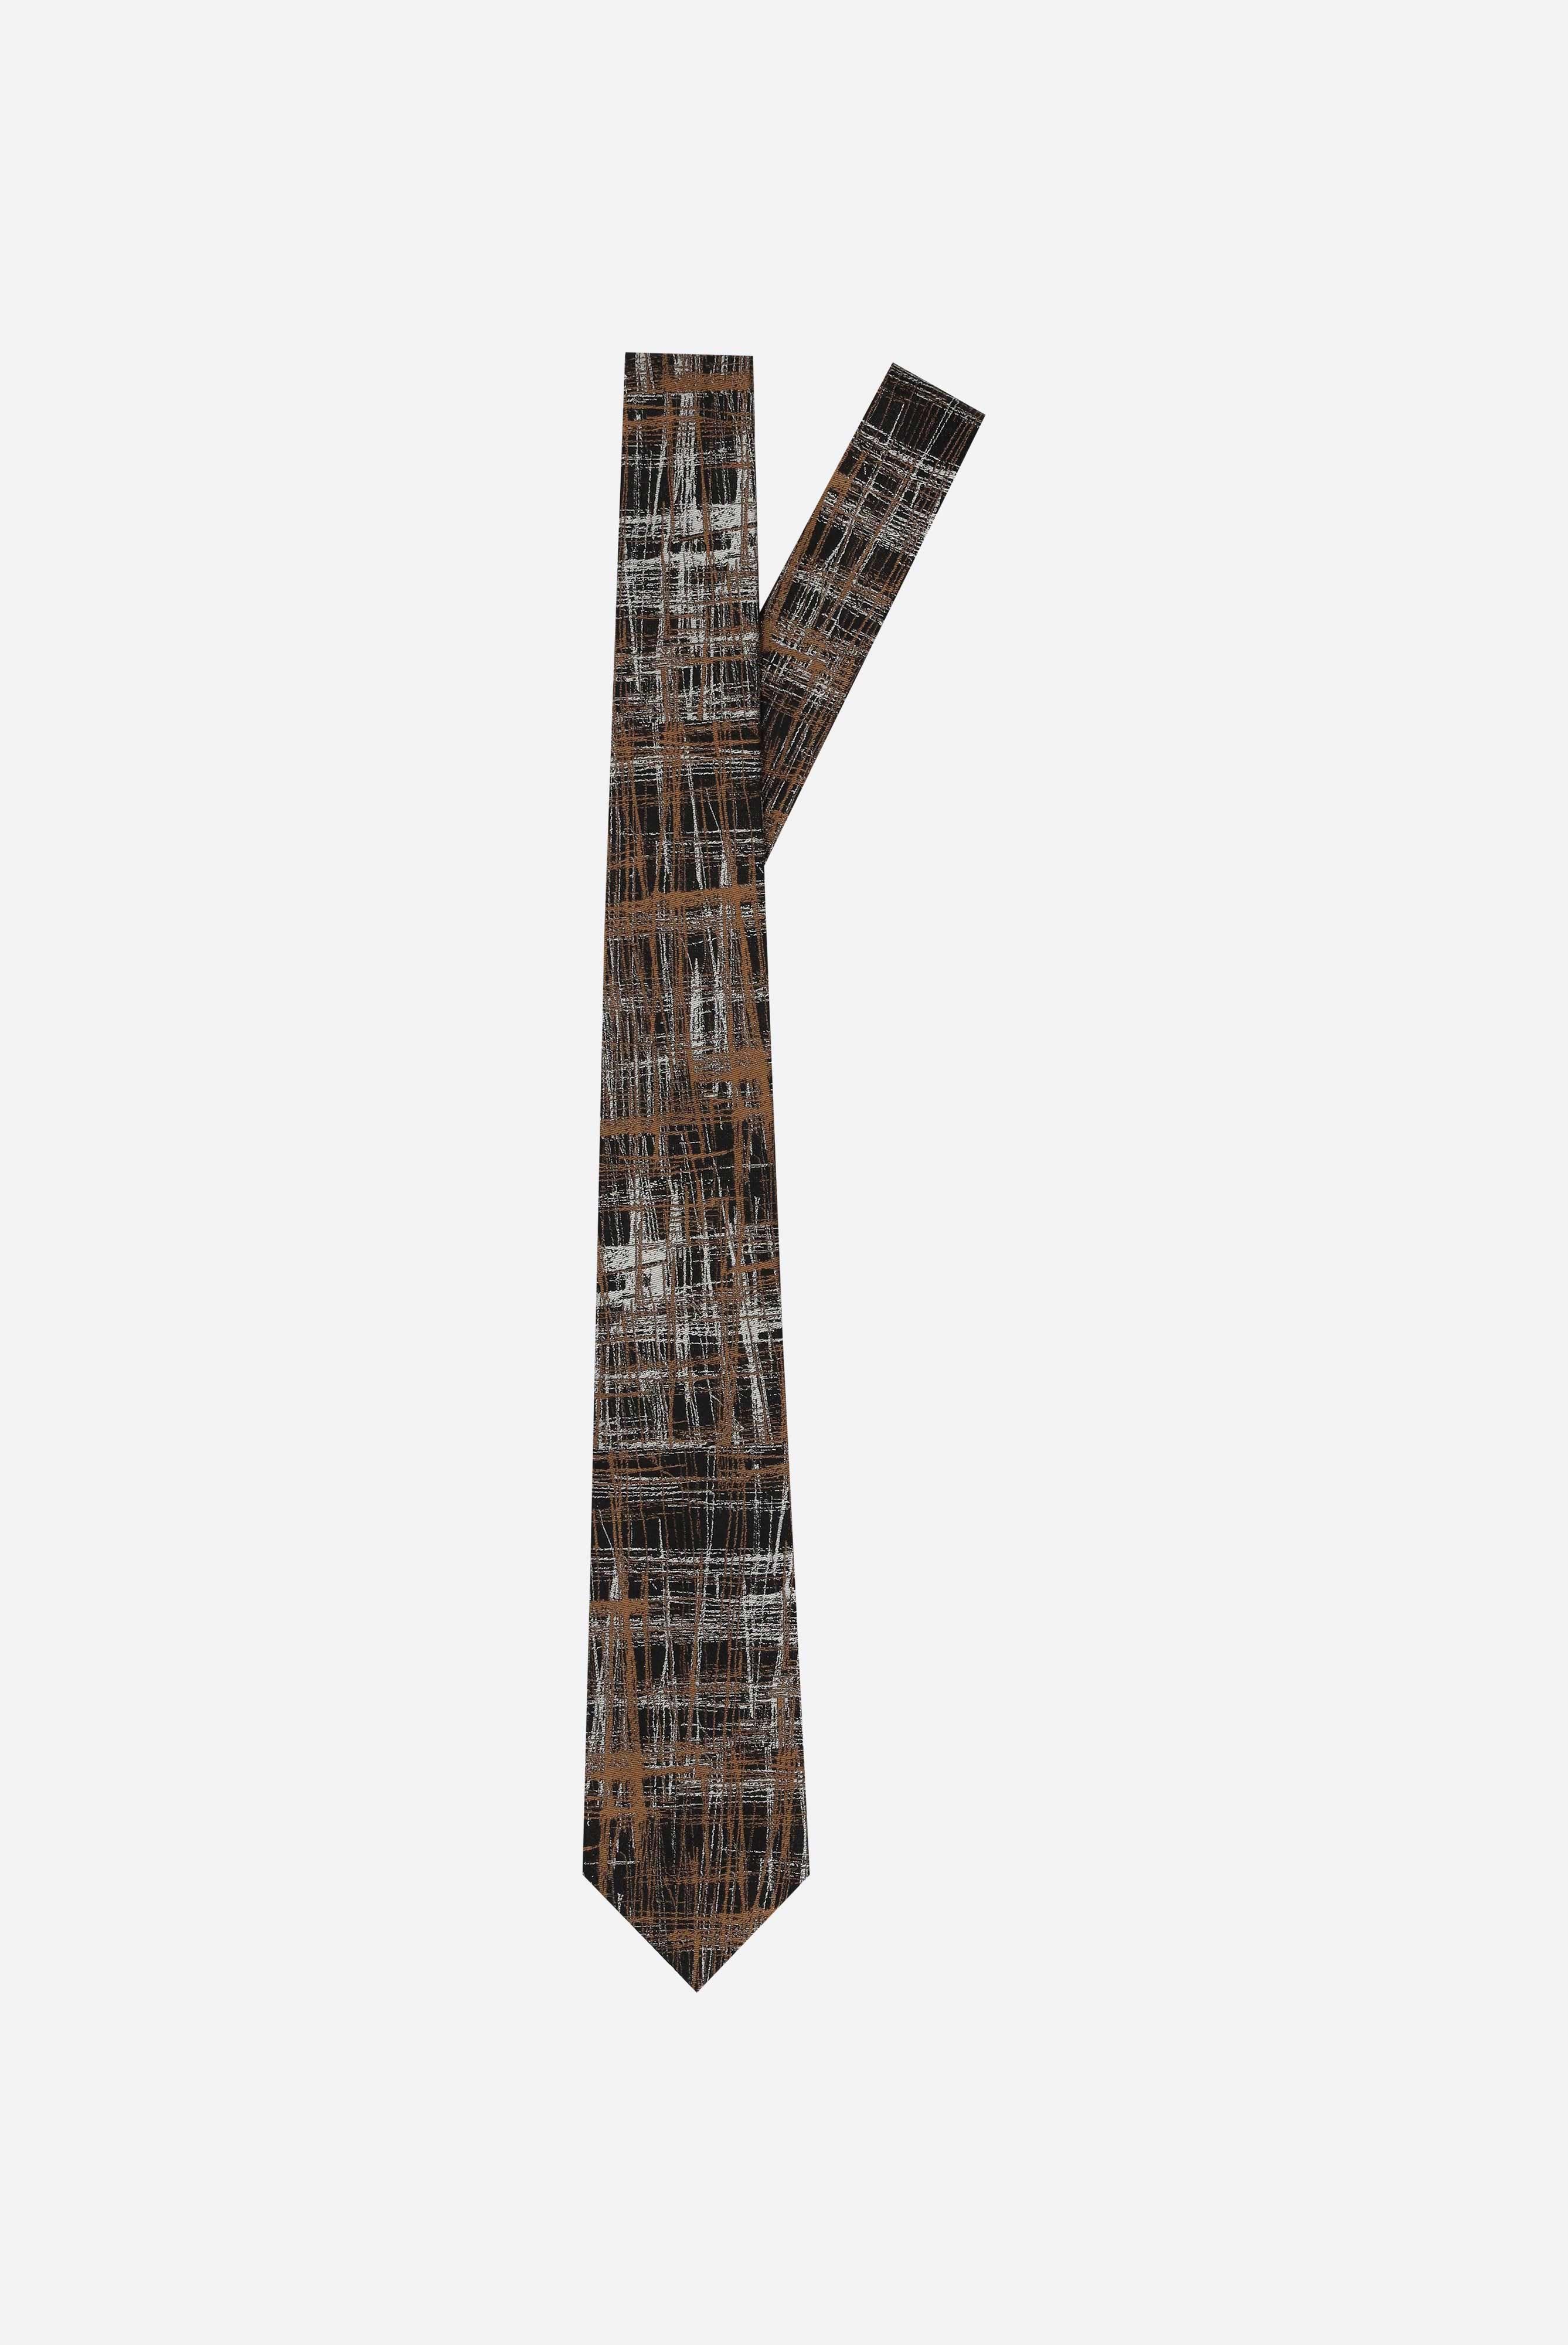 Seiden-Jacquard-Krawatte